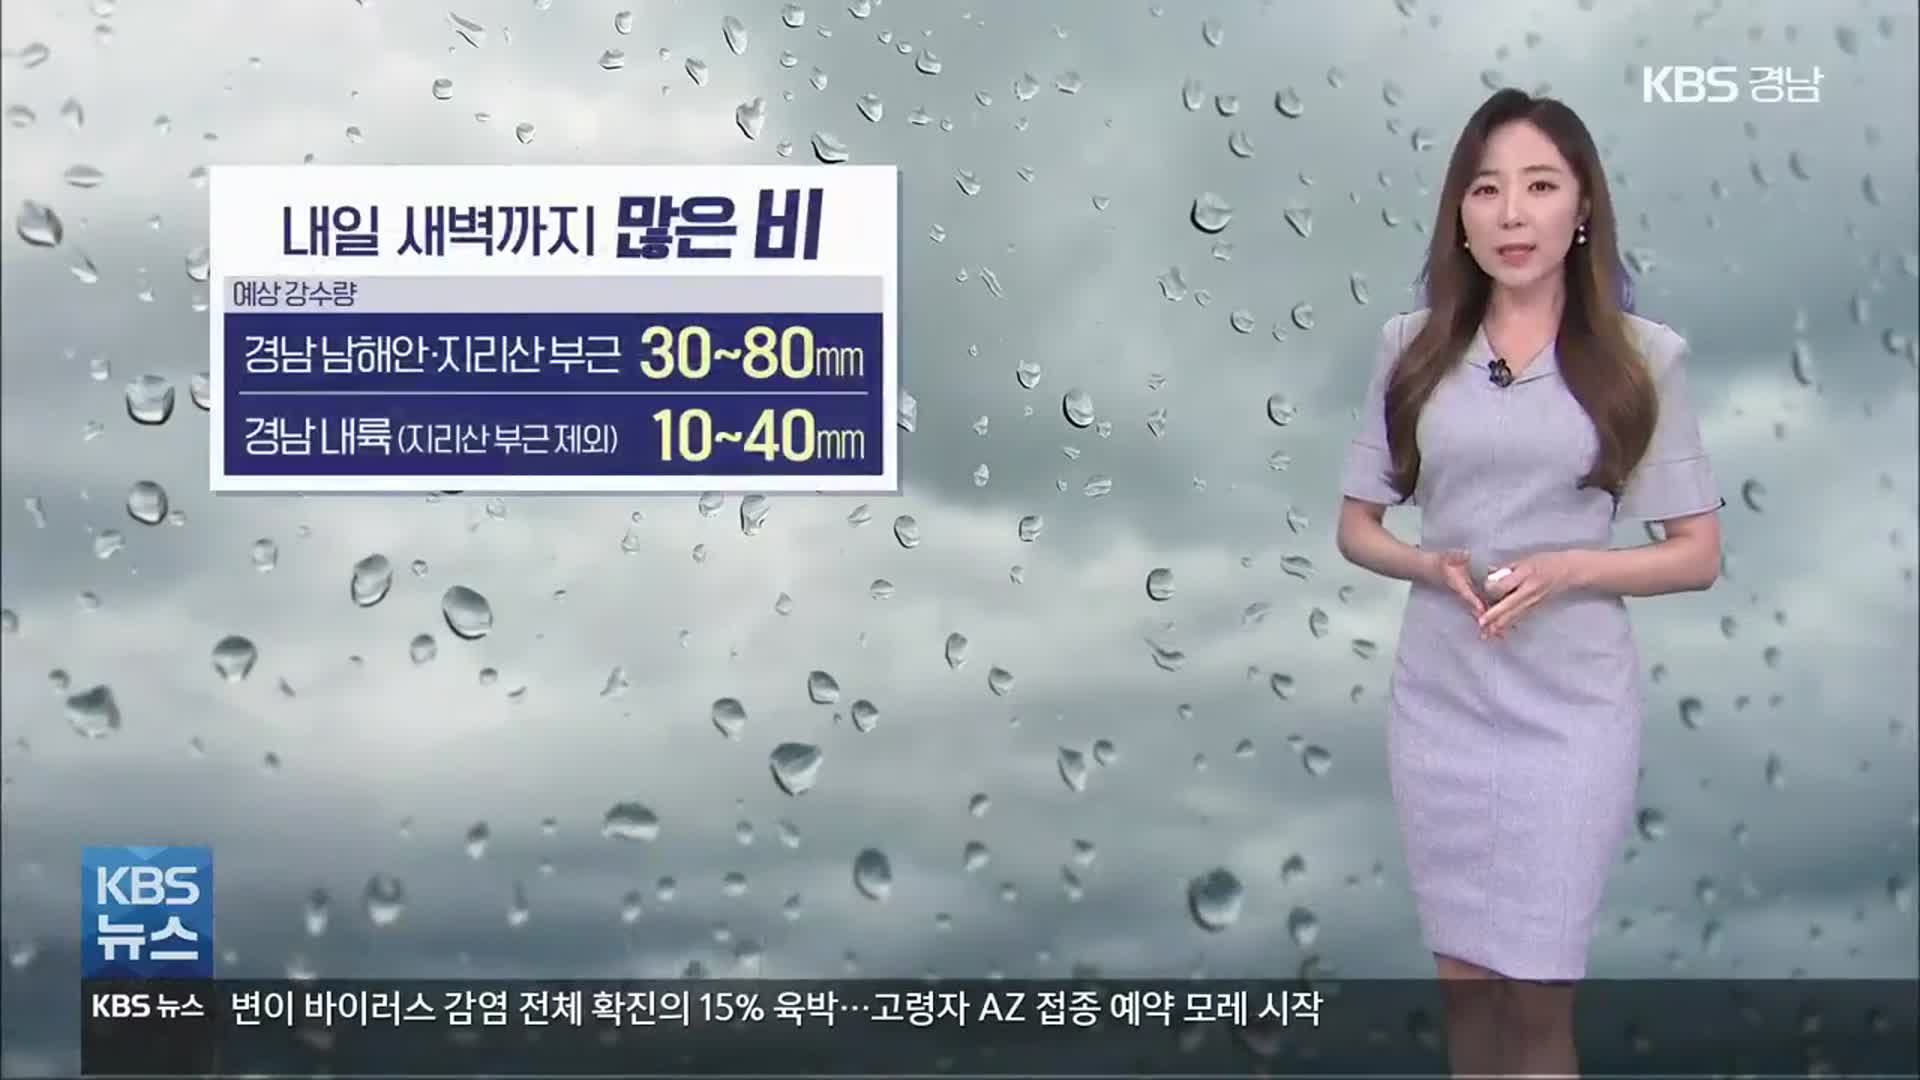 [날씨] 경남 일부지역 강풍주의보 발효 중…내일 새벽까지 많은 ‘비’